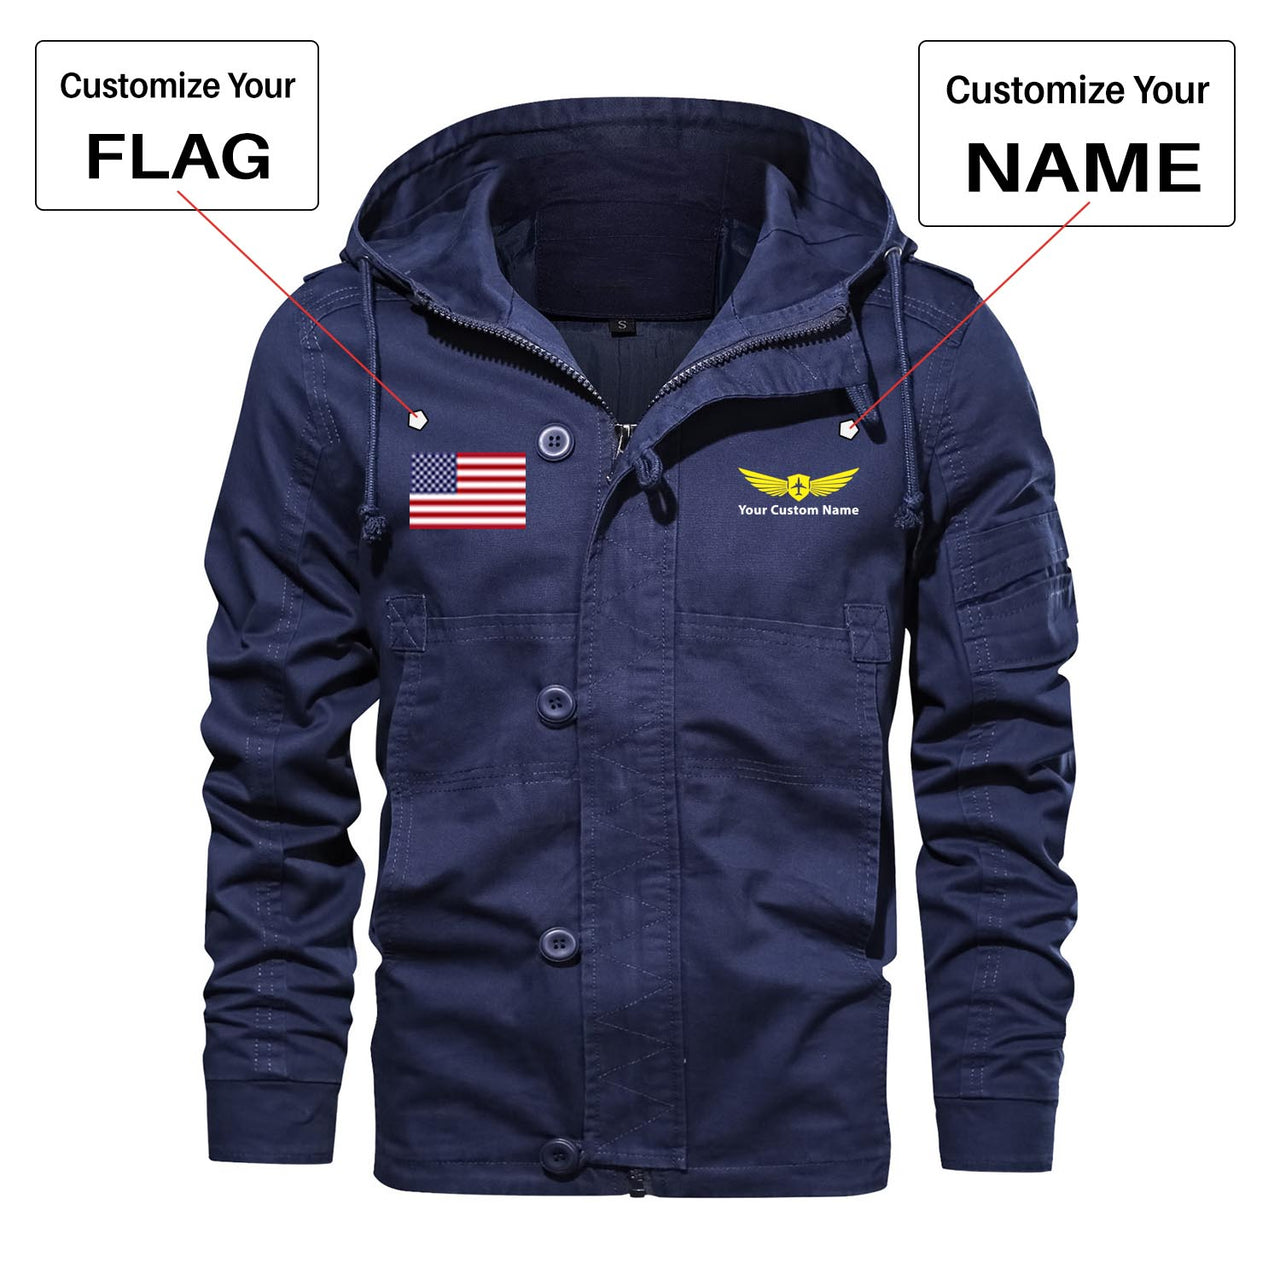 Custom Flag & Name "Badge 2" Designed Cotton Jackets